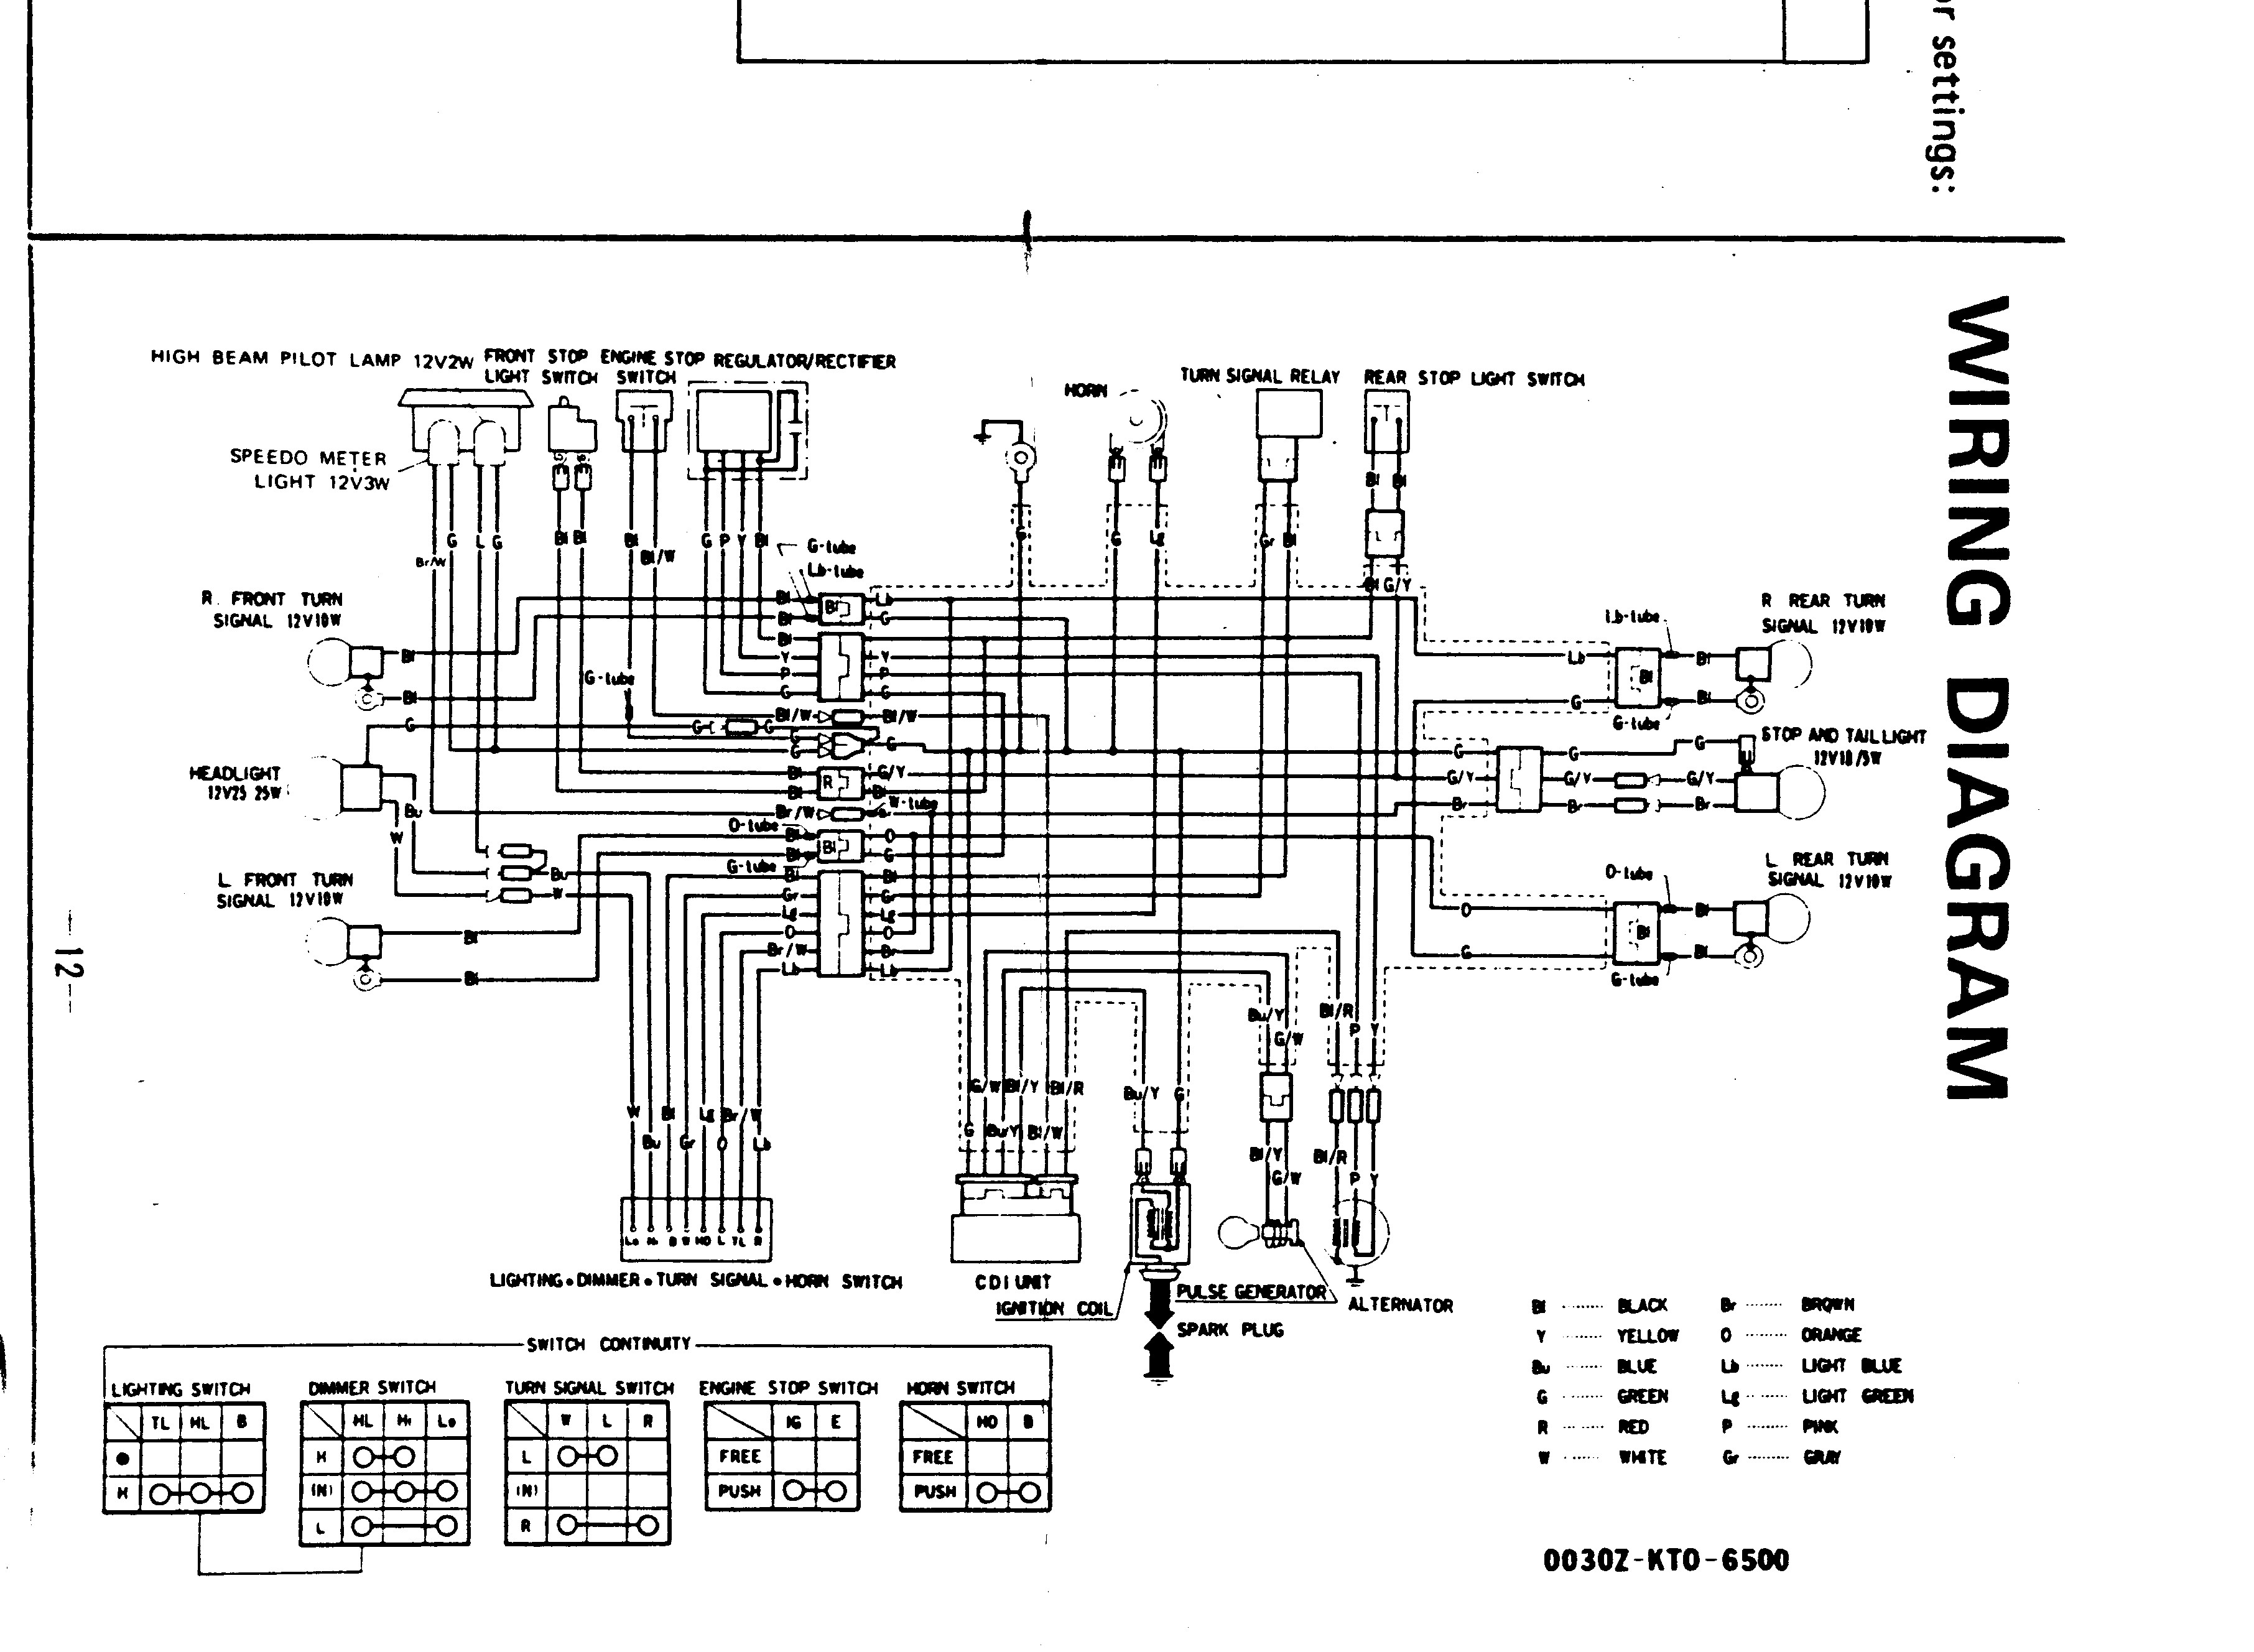 1978 Honda Xl 125 Wiring Diagram Honda Xr250r Wiring Diagram Honda Wiring Diagrams Instructions Of 1978 Honda Xl 125 Wiring Diagram